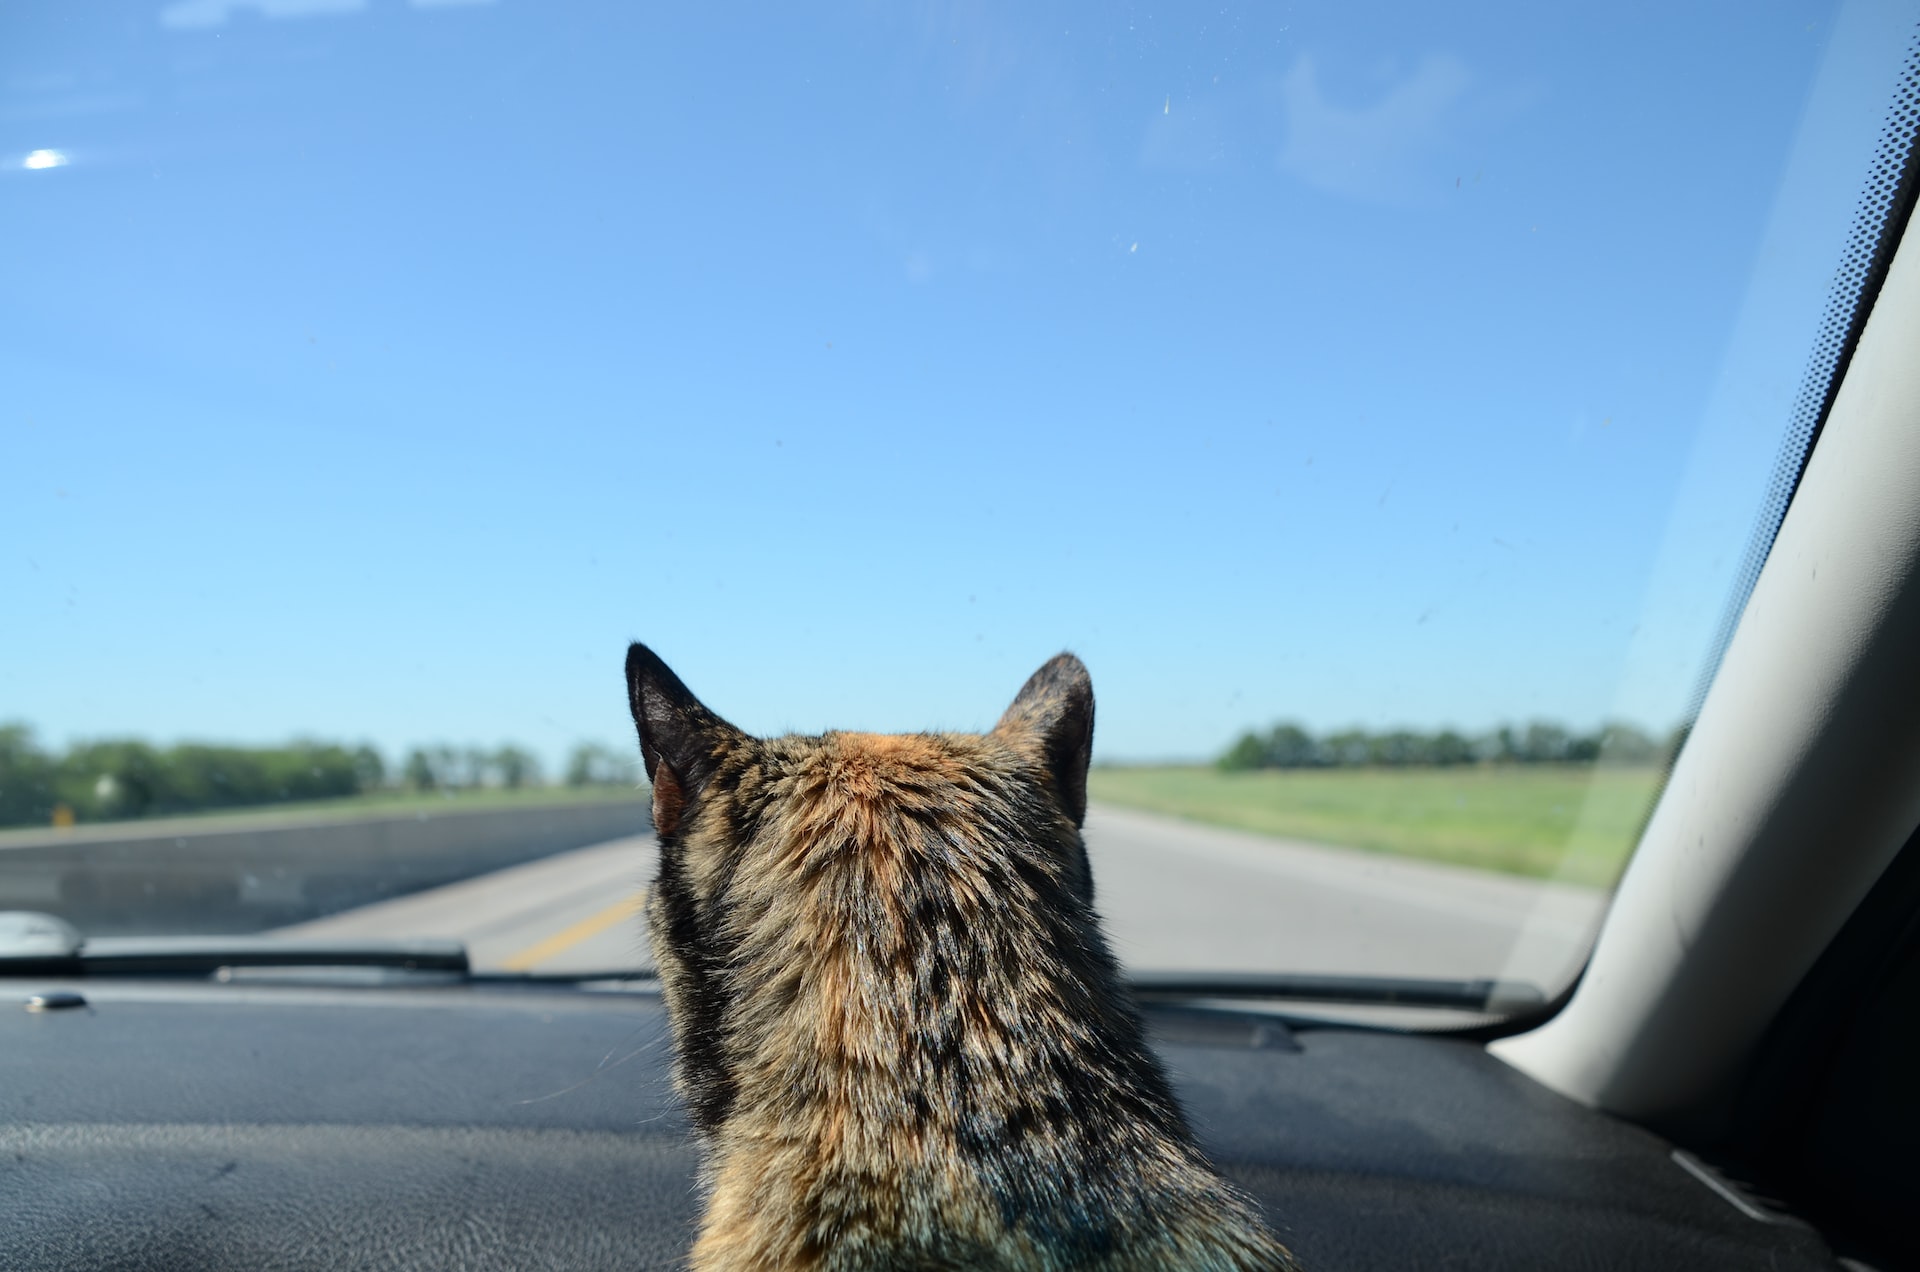 come viaggiare con un gatto in macchina consigli